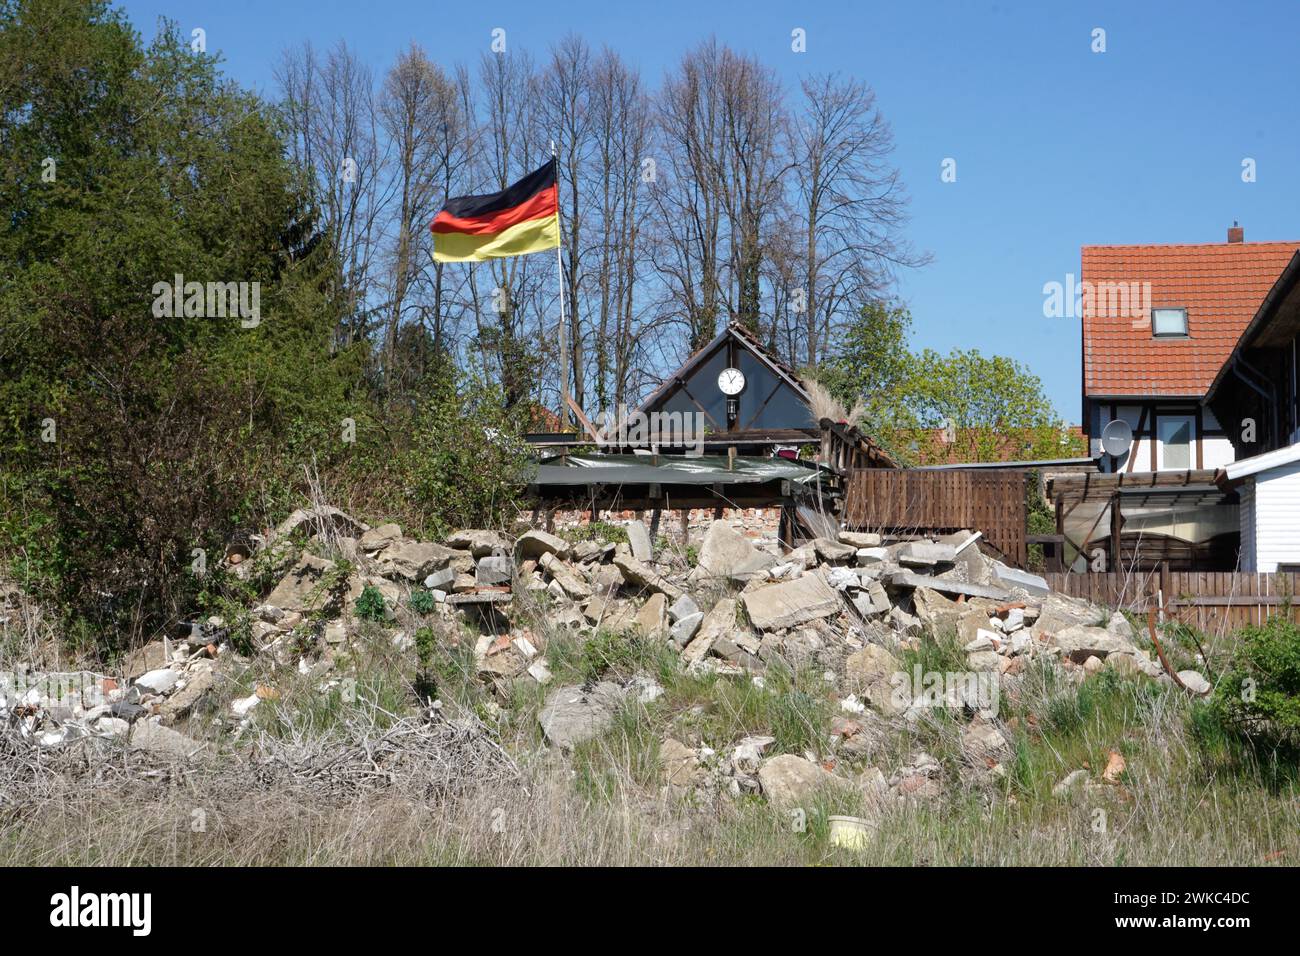 Eine deutsche Flagge flattert vor einem Schutthaufen auf einem Haus, Schöningen, 22/04/2019 Stockfoto